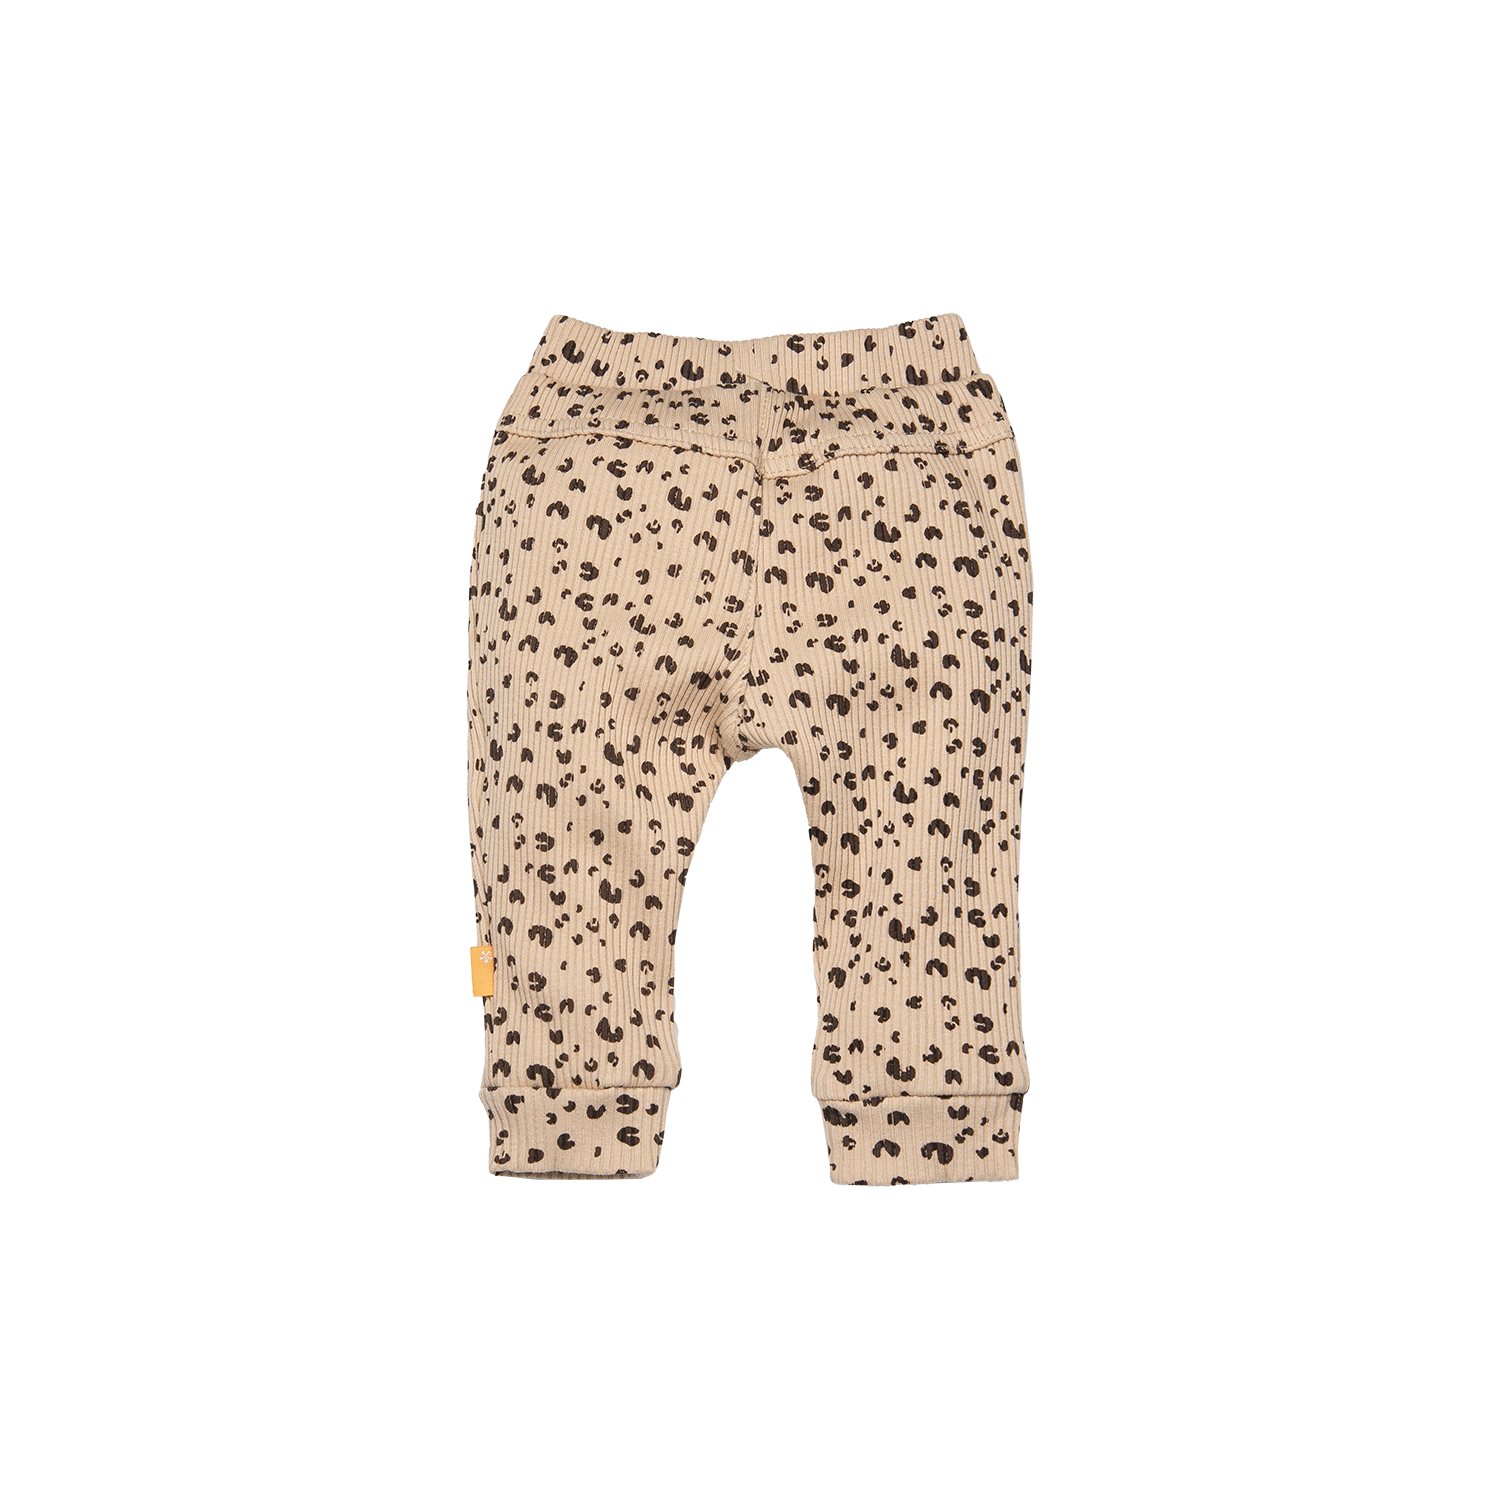 Meisjes Pants Cheetah van B.E.S.S. in de kleur Dessin in maat 68.